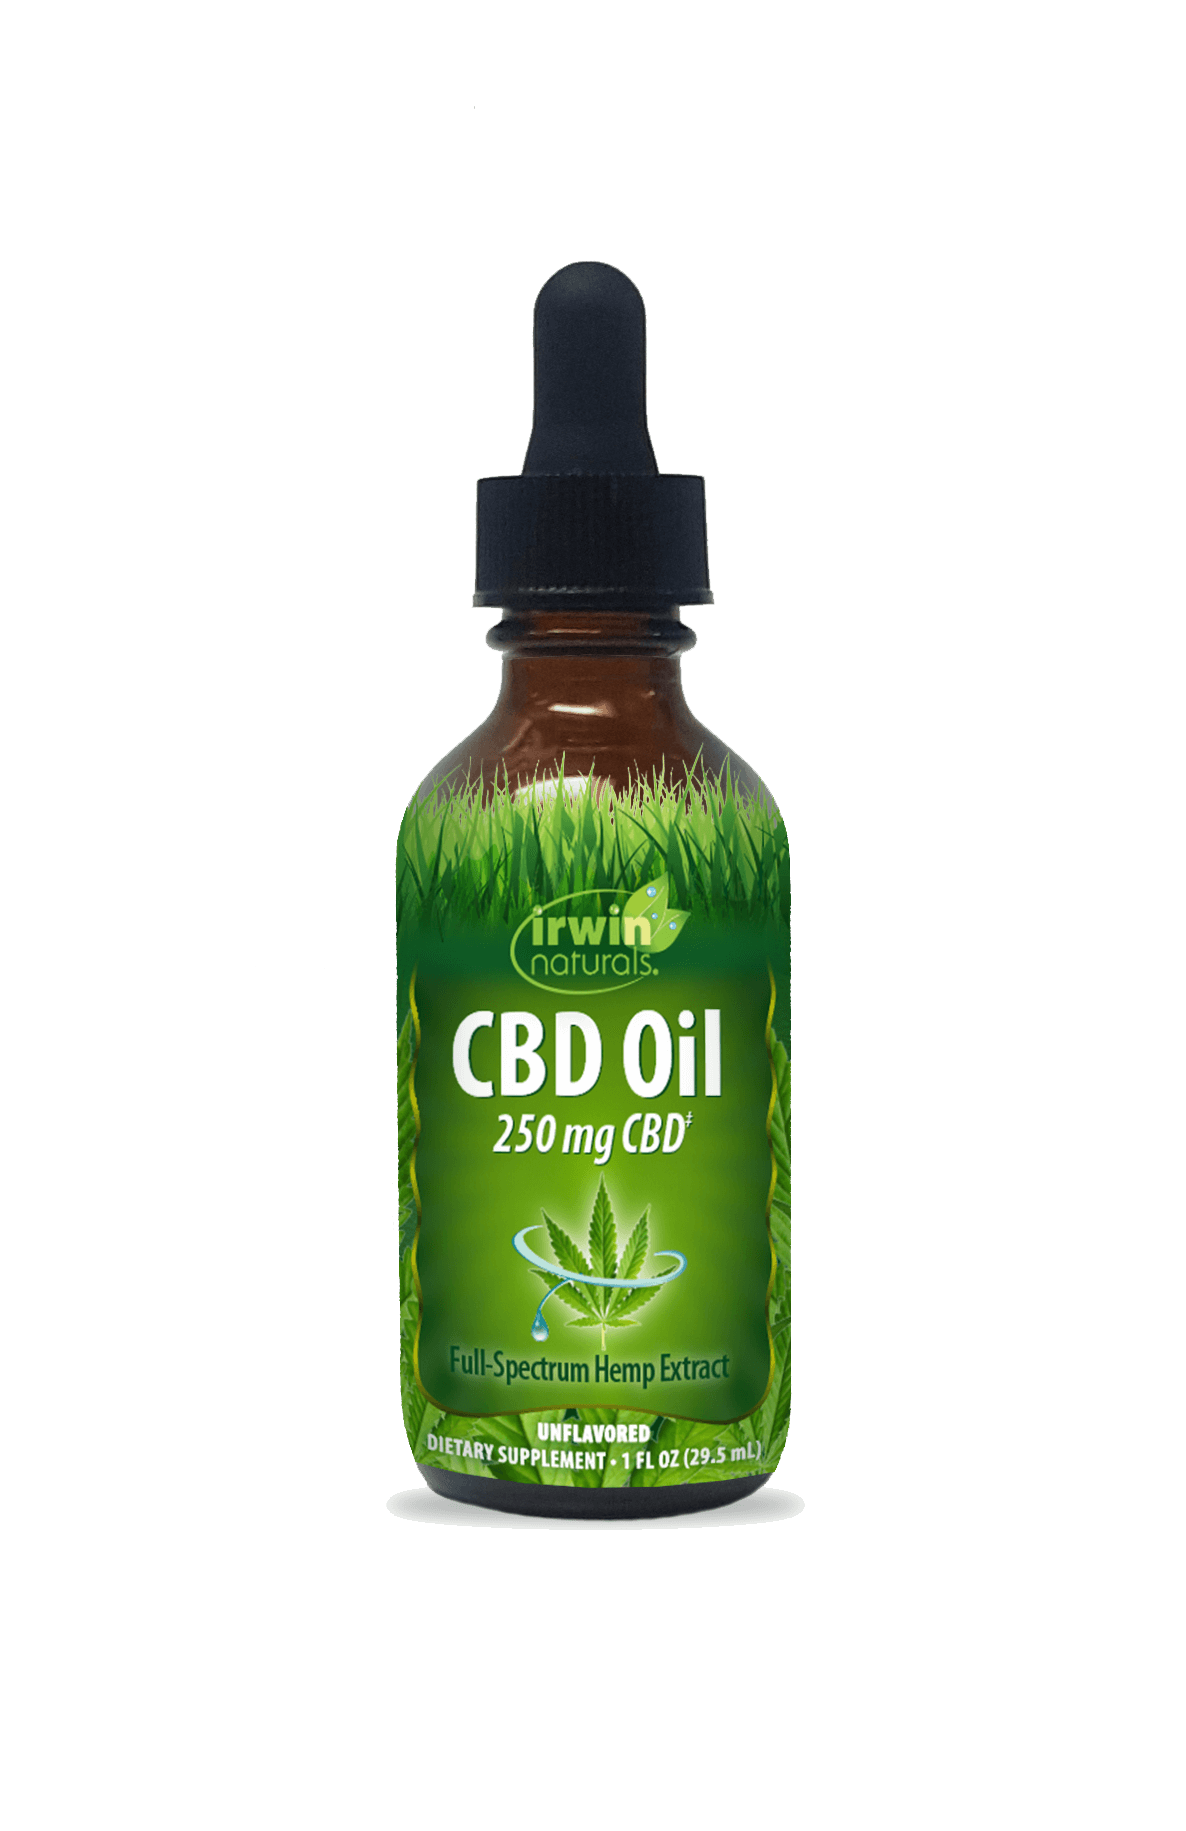 CBD Oil 250 mg CBD by Irwin Naturals